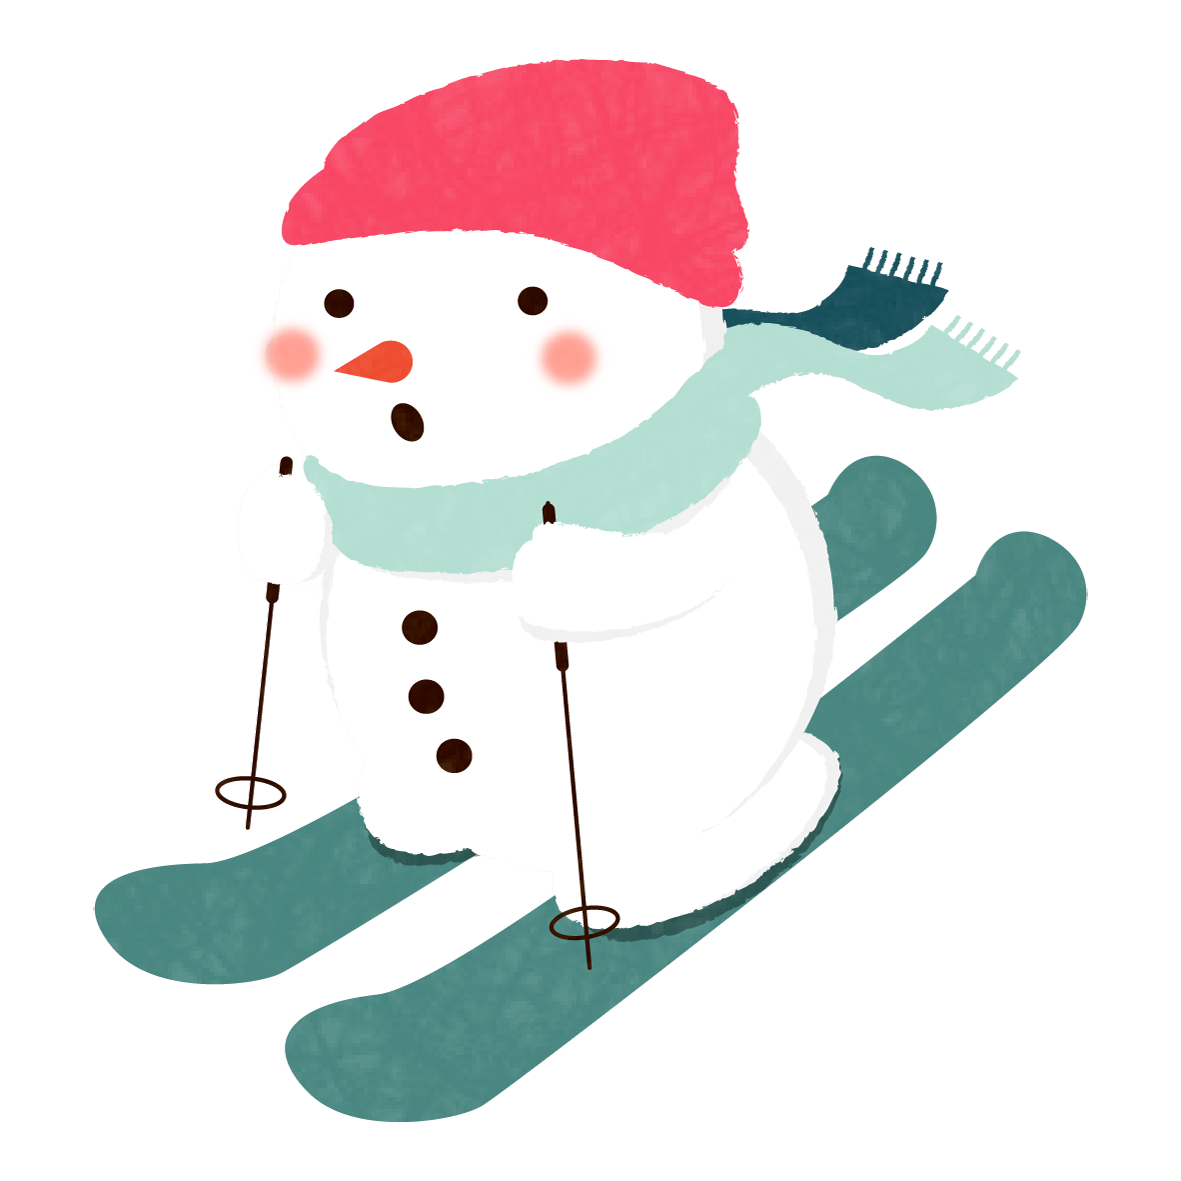 ウィンタースポーツを楽しむ、かわいい雪だるまのイラストです☆<br>
スキー旅行のしおりや、季節のイメージイラストとしてお使いいただけます。